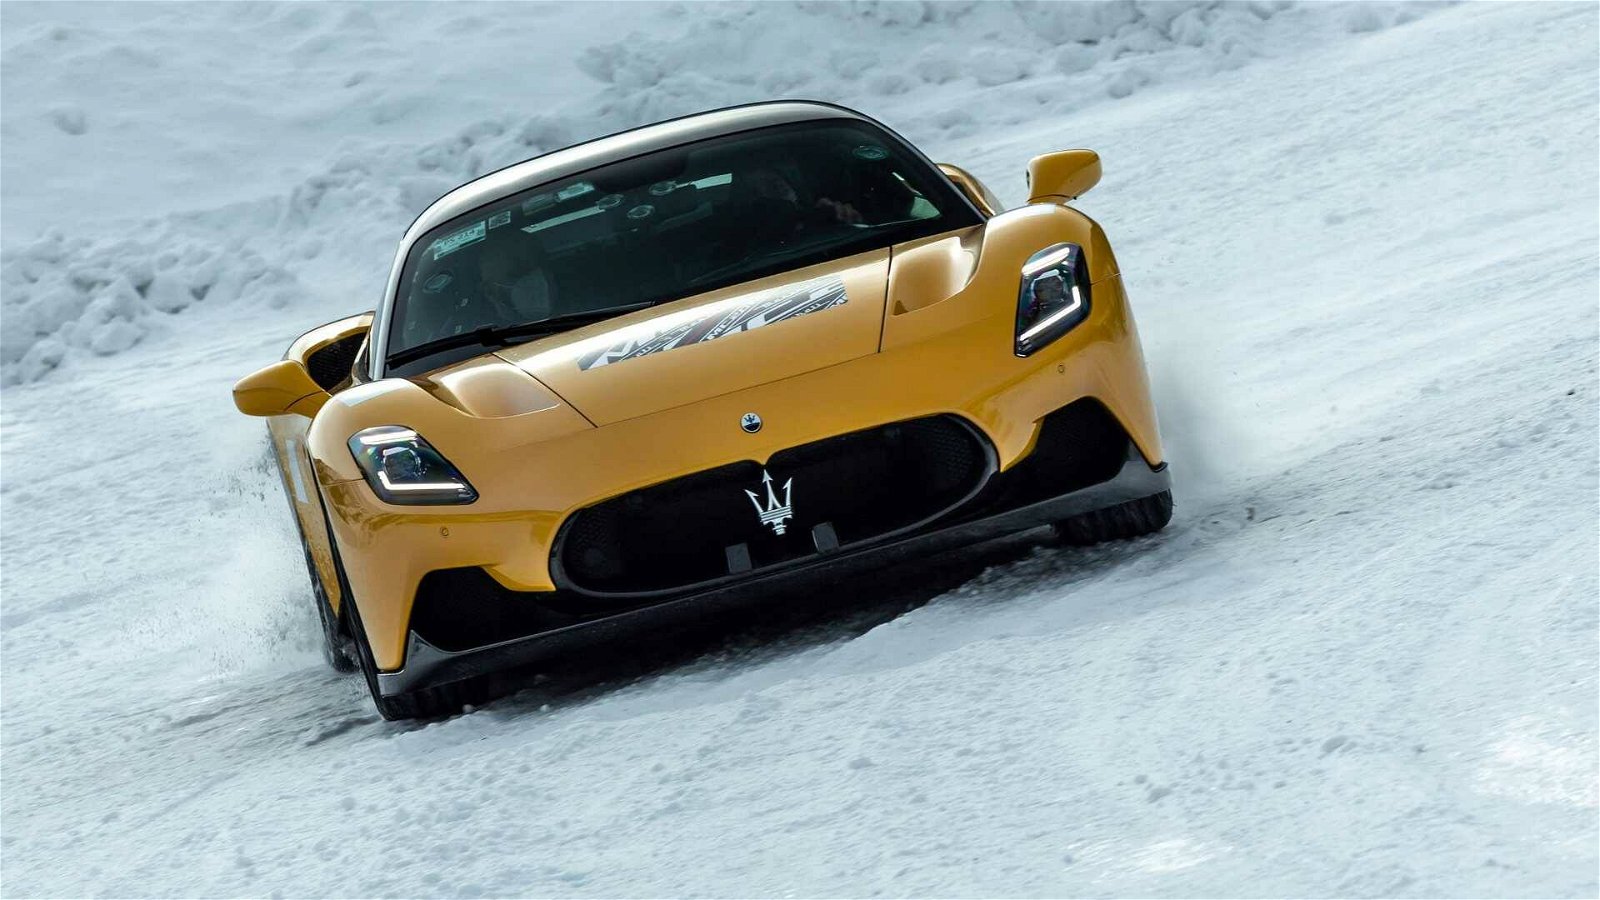 Immagine di Maserati MC20: le immagini dei test su neve a Livigno